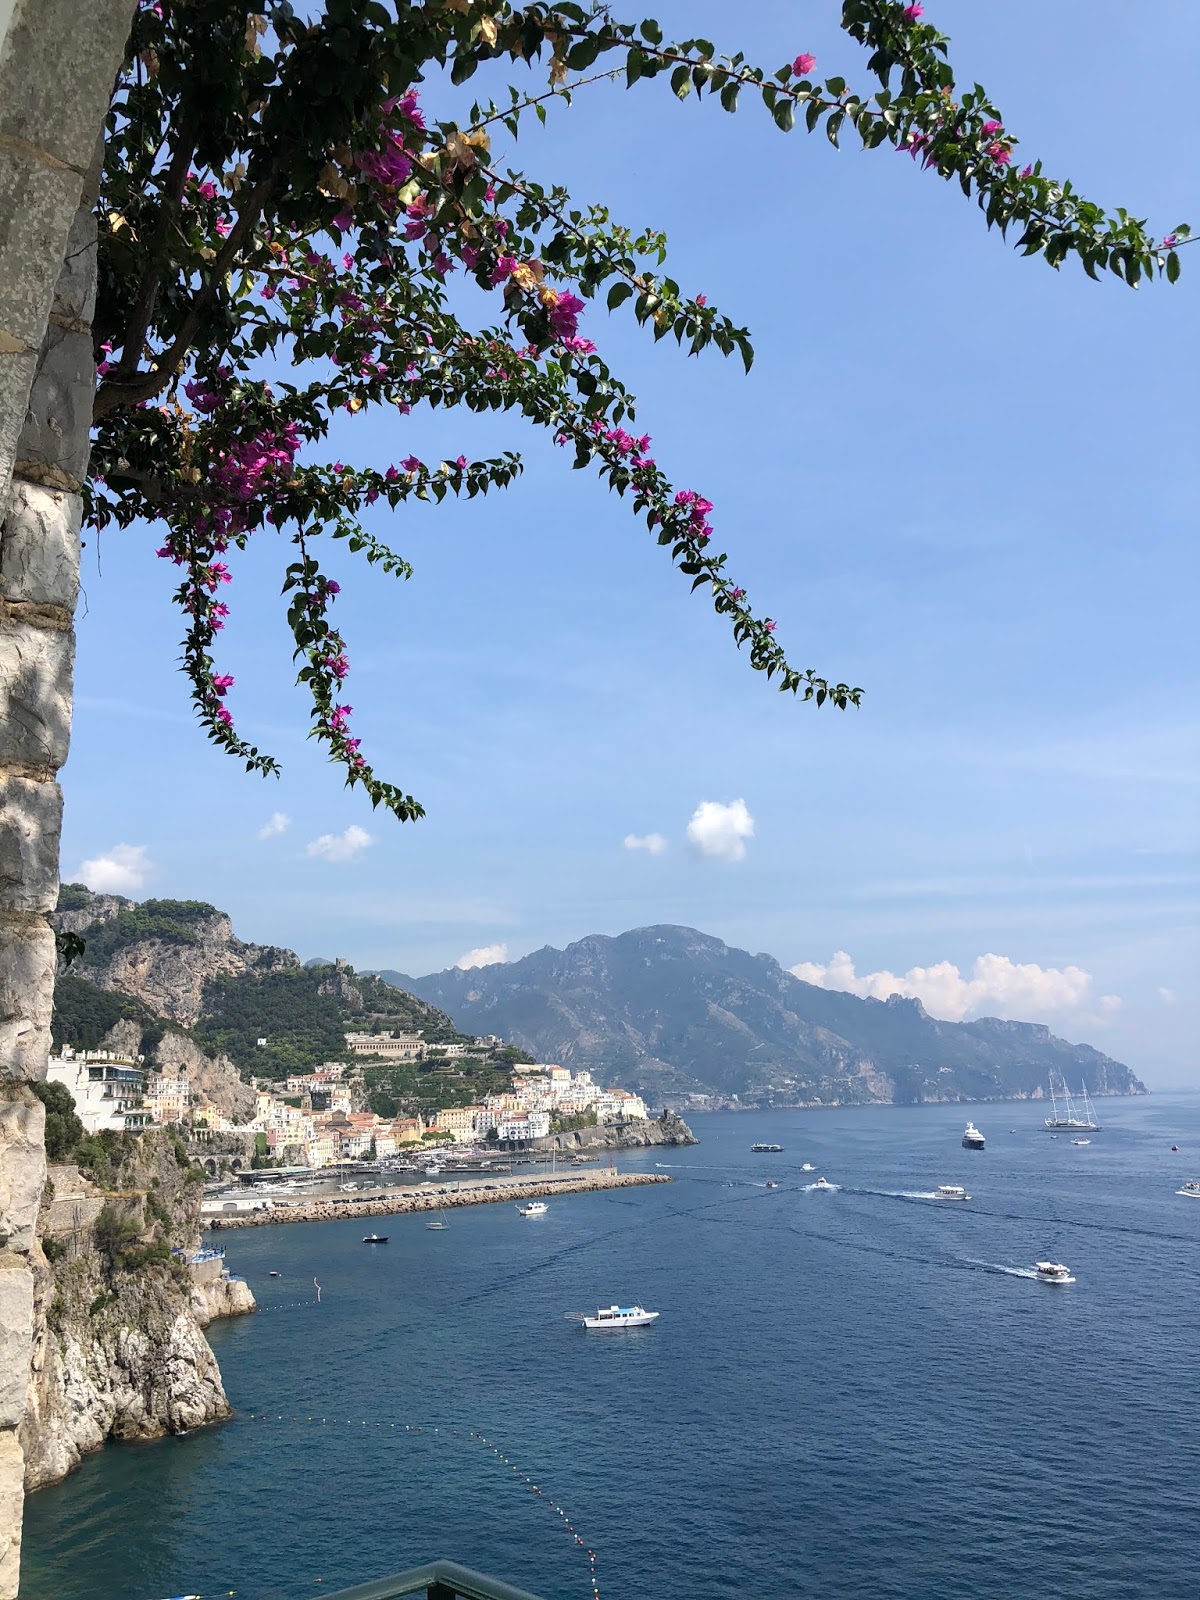 Travel // Hotel Santa Caterina & Amalfi, Italy - Roses and Rolltops